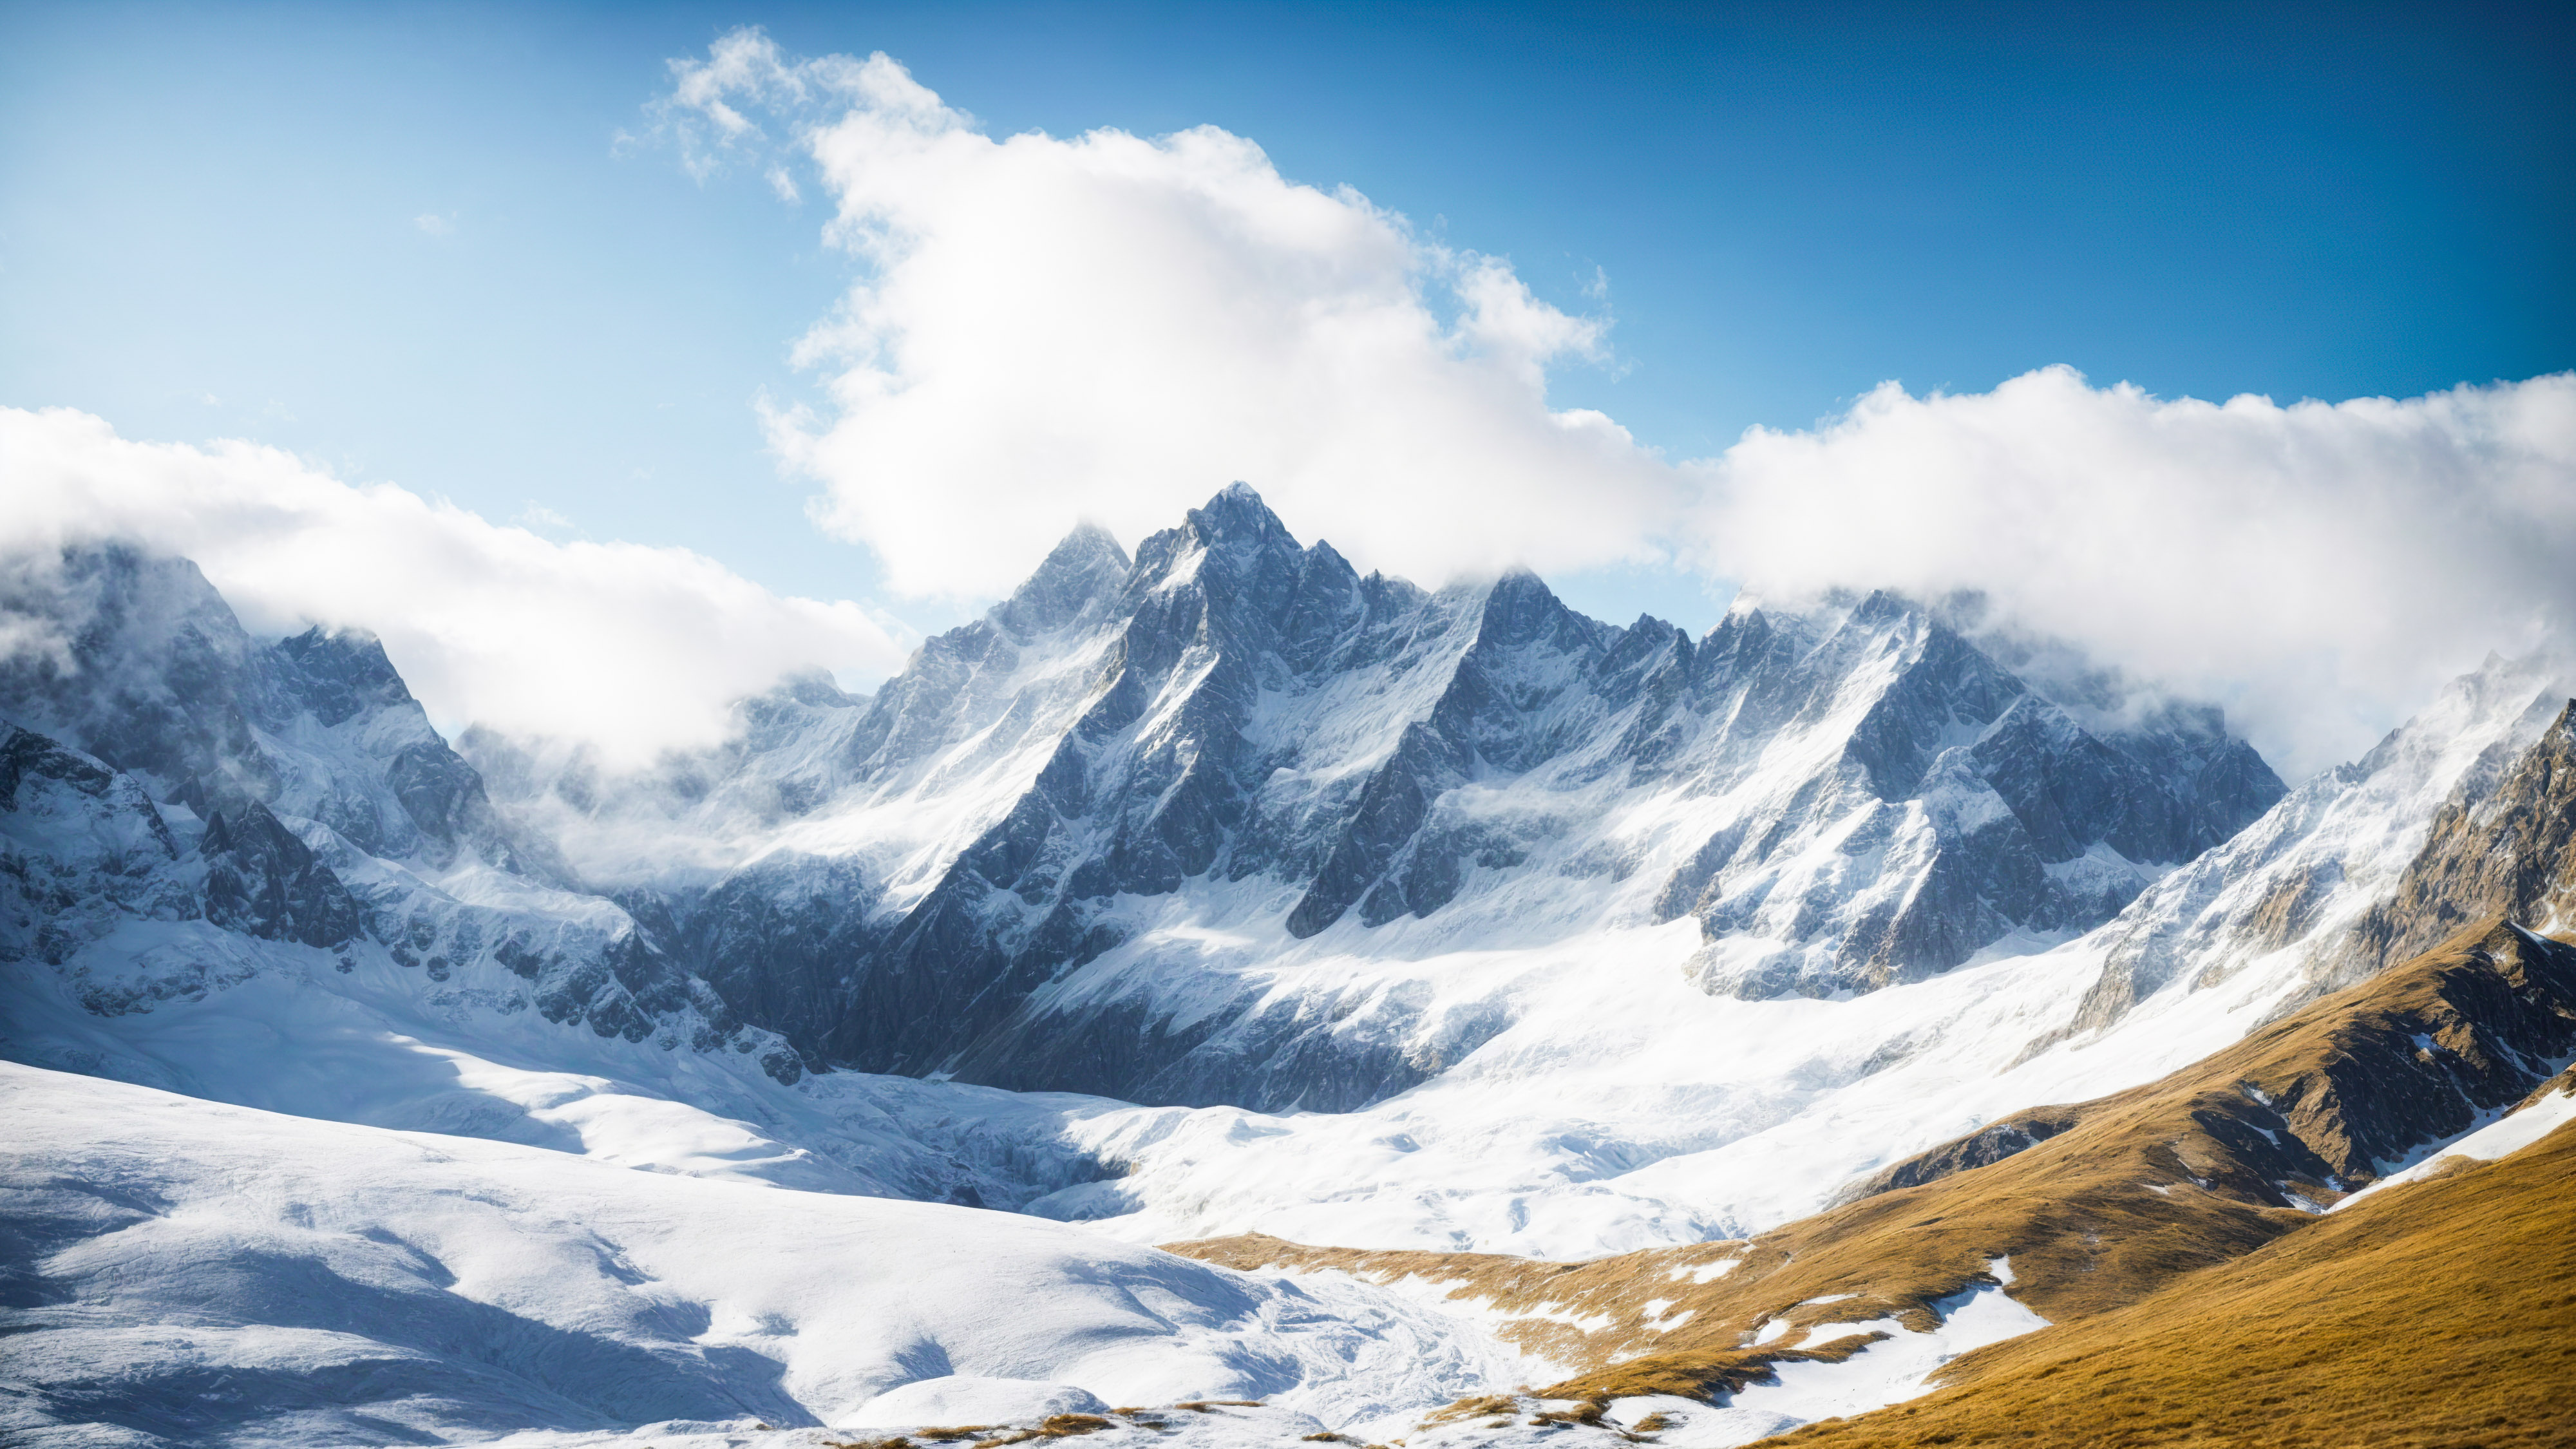 Téléchargez ce fond d'écran de nature pour ordinateur de bureau en HD, capturant une vue à couper le souffle sur une montagne avec des pics dentelés, de la neige immaculée et un ciel bleu clair, et laissez votre écran devenir une porte vers les hauteurs majestueuses de la grandeur de la nature.